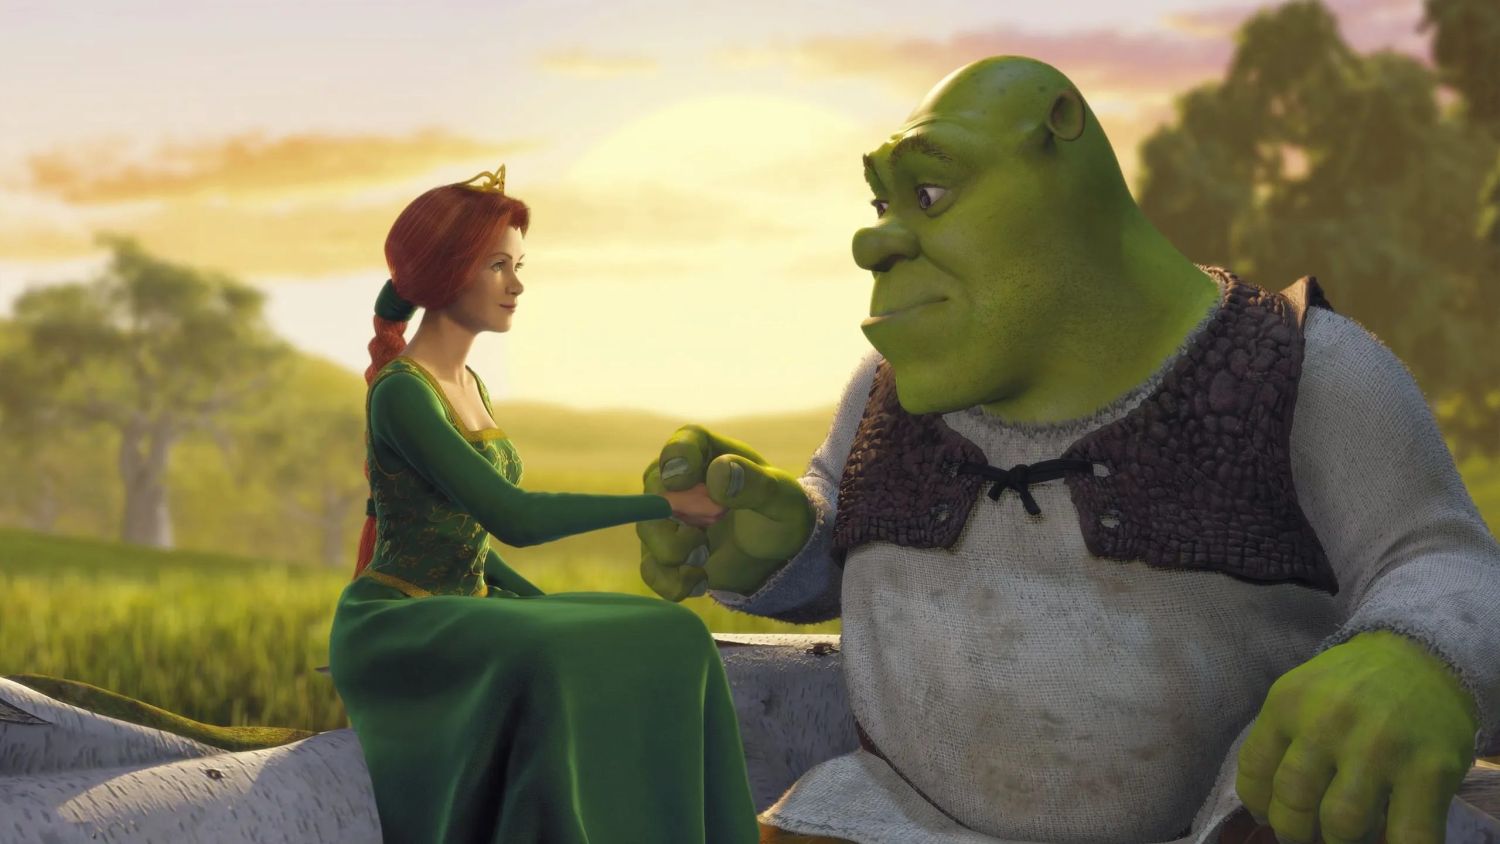 Shrek y una historia atípica dentro de los cuentos de hadas